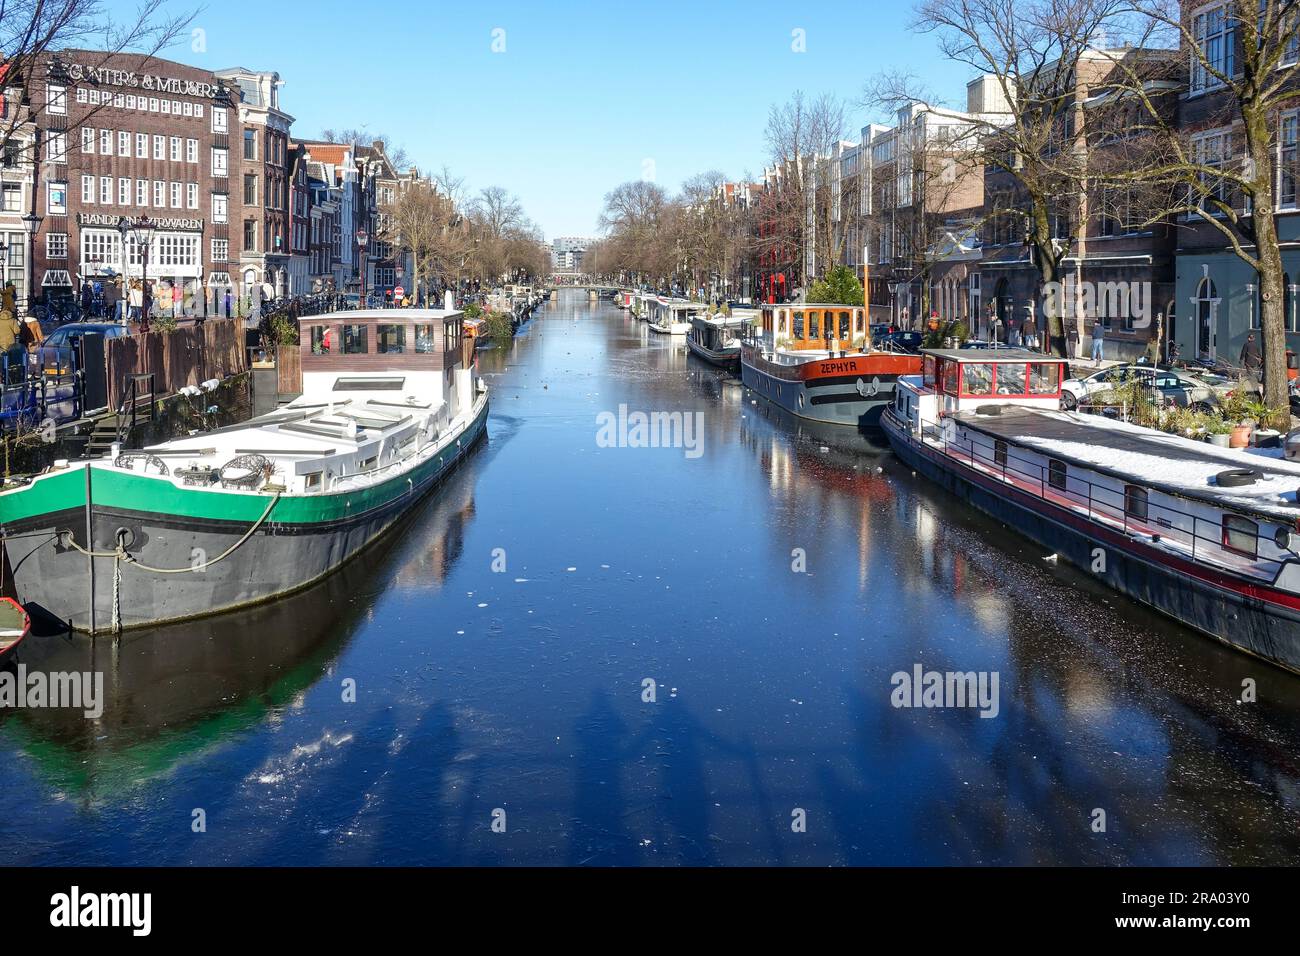 Bateaux sur les canaux gelés d'Amsterdam pendant une froide journée d'hiver de février 2021 Banque D'Images